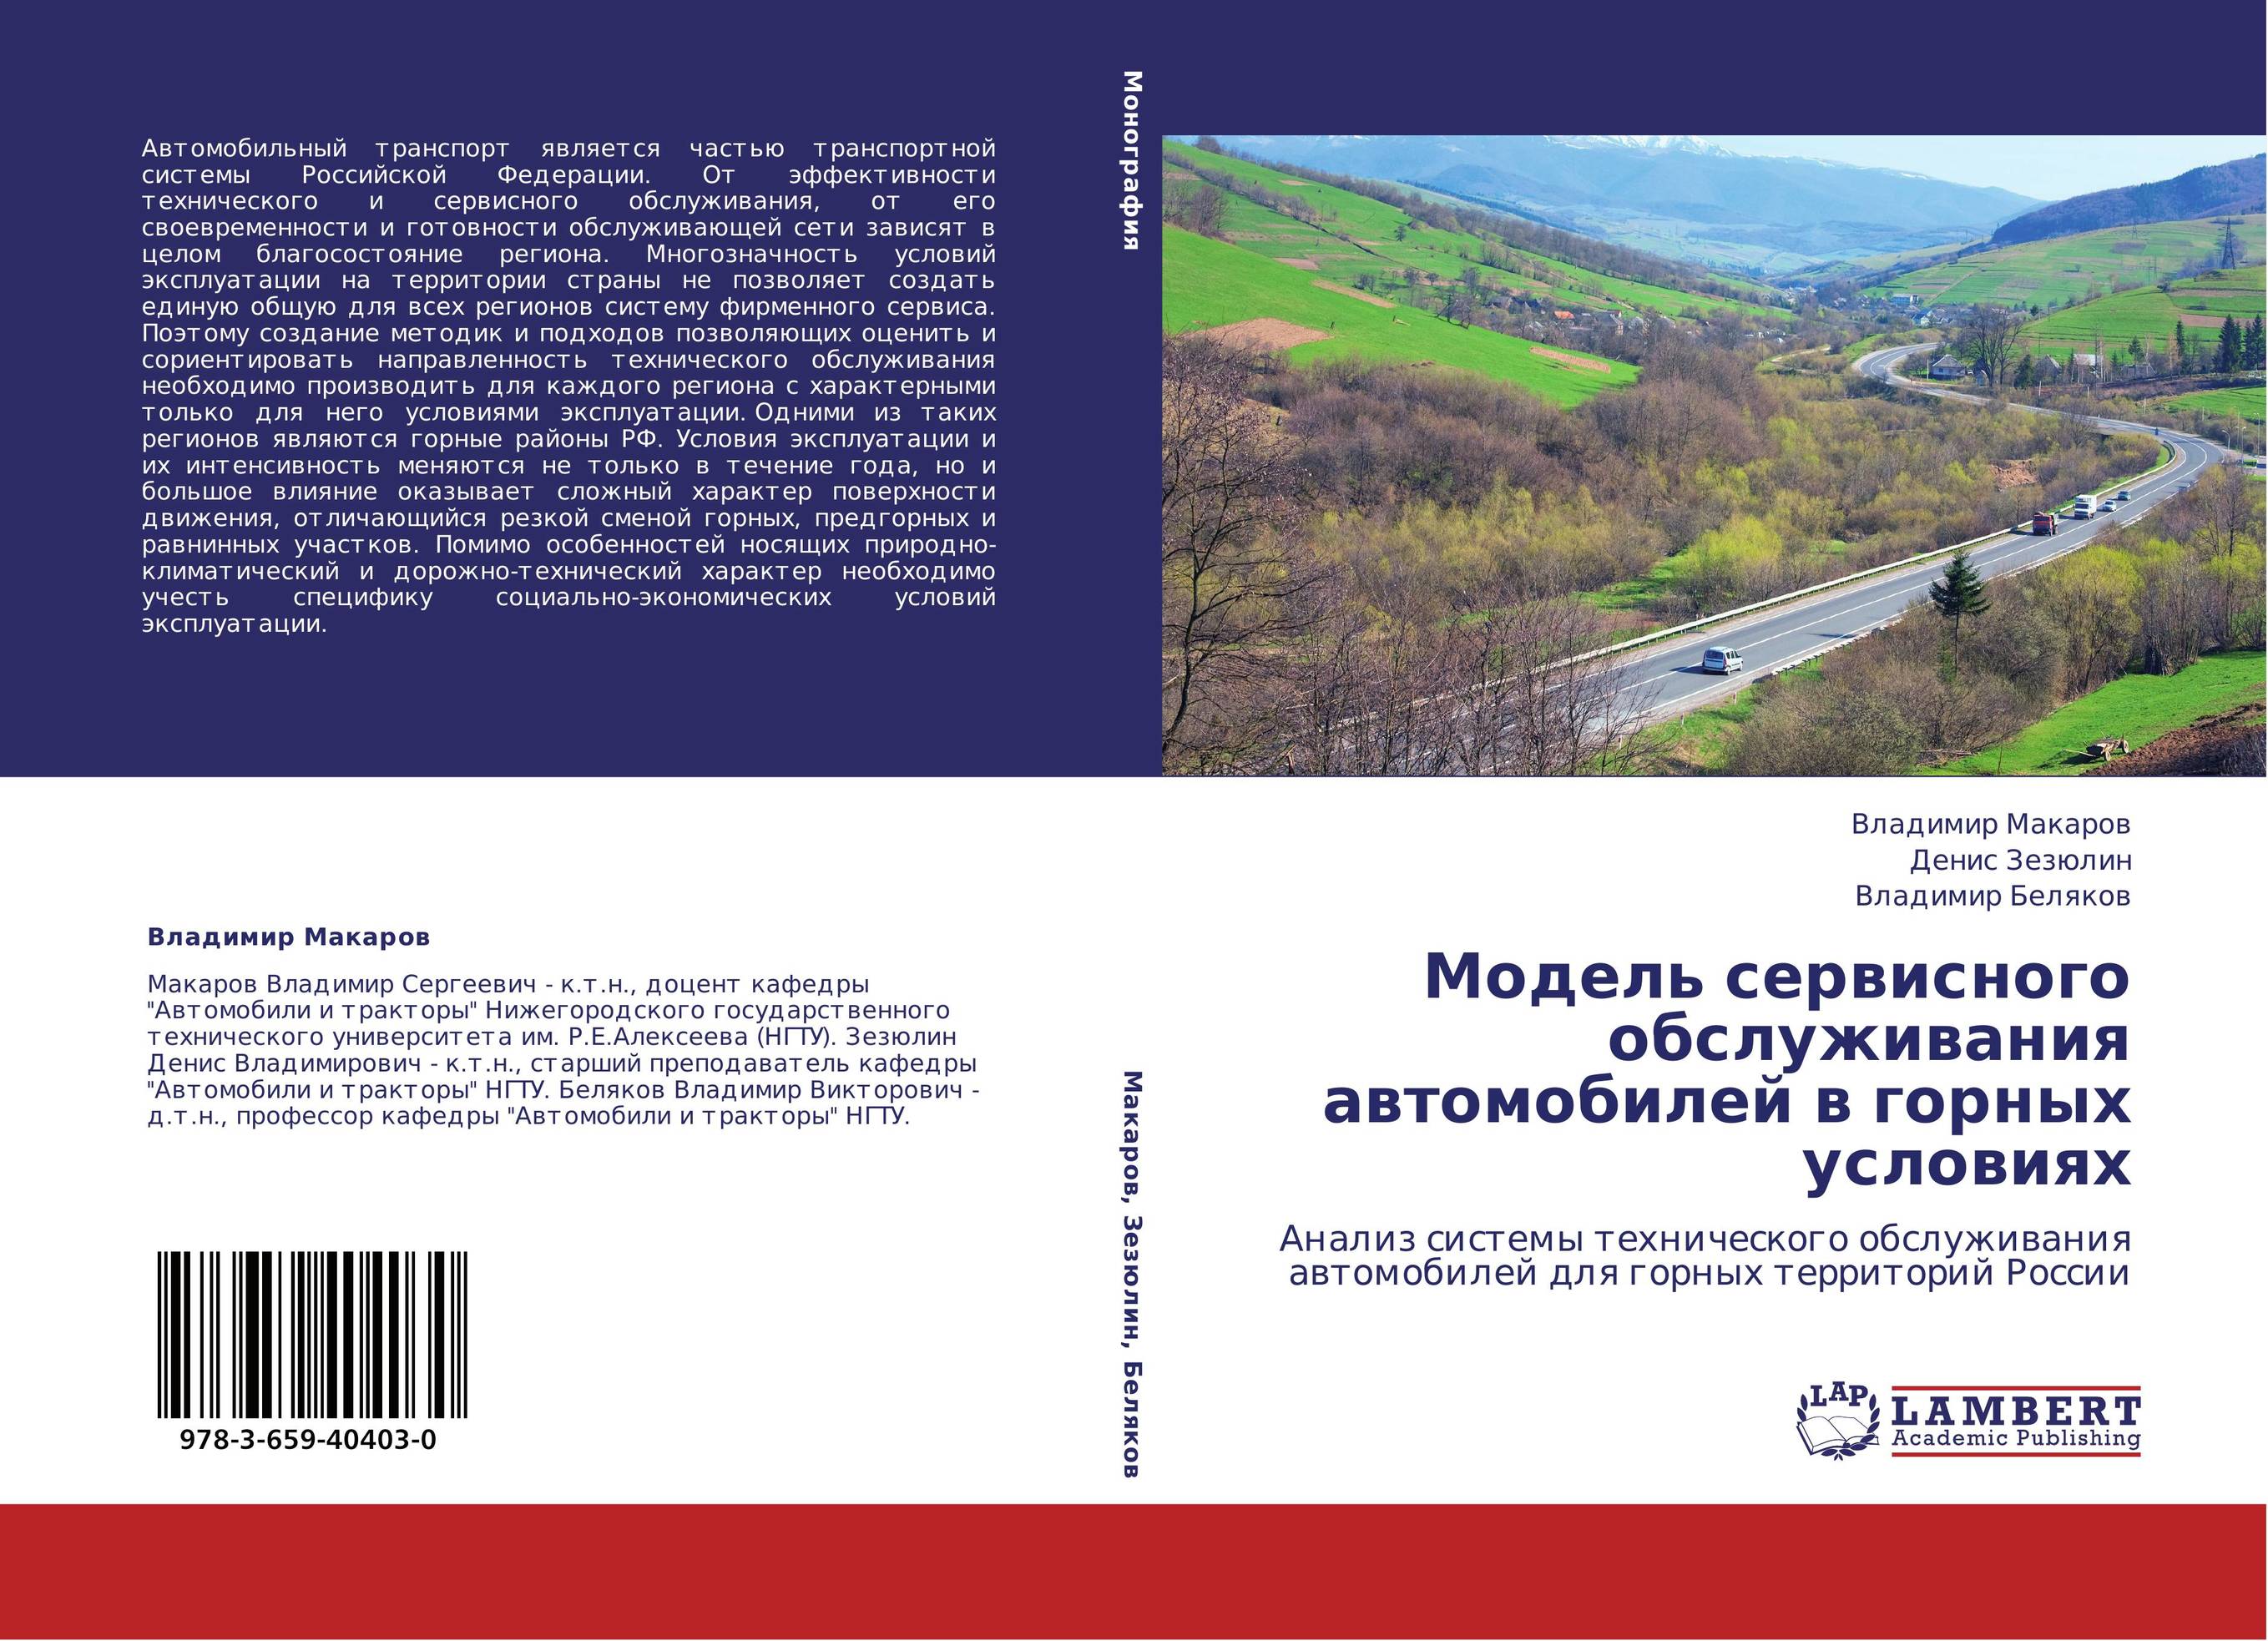 Модель сервисного обслуживания автомобилей в горных условиях. Анализ системы технического обслуживания автомобилей для горных территорий России.